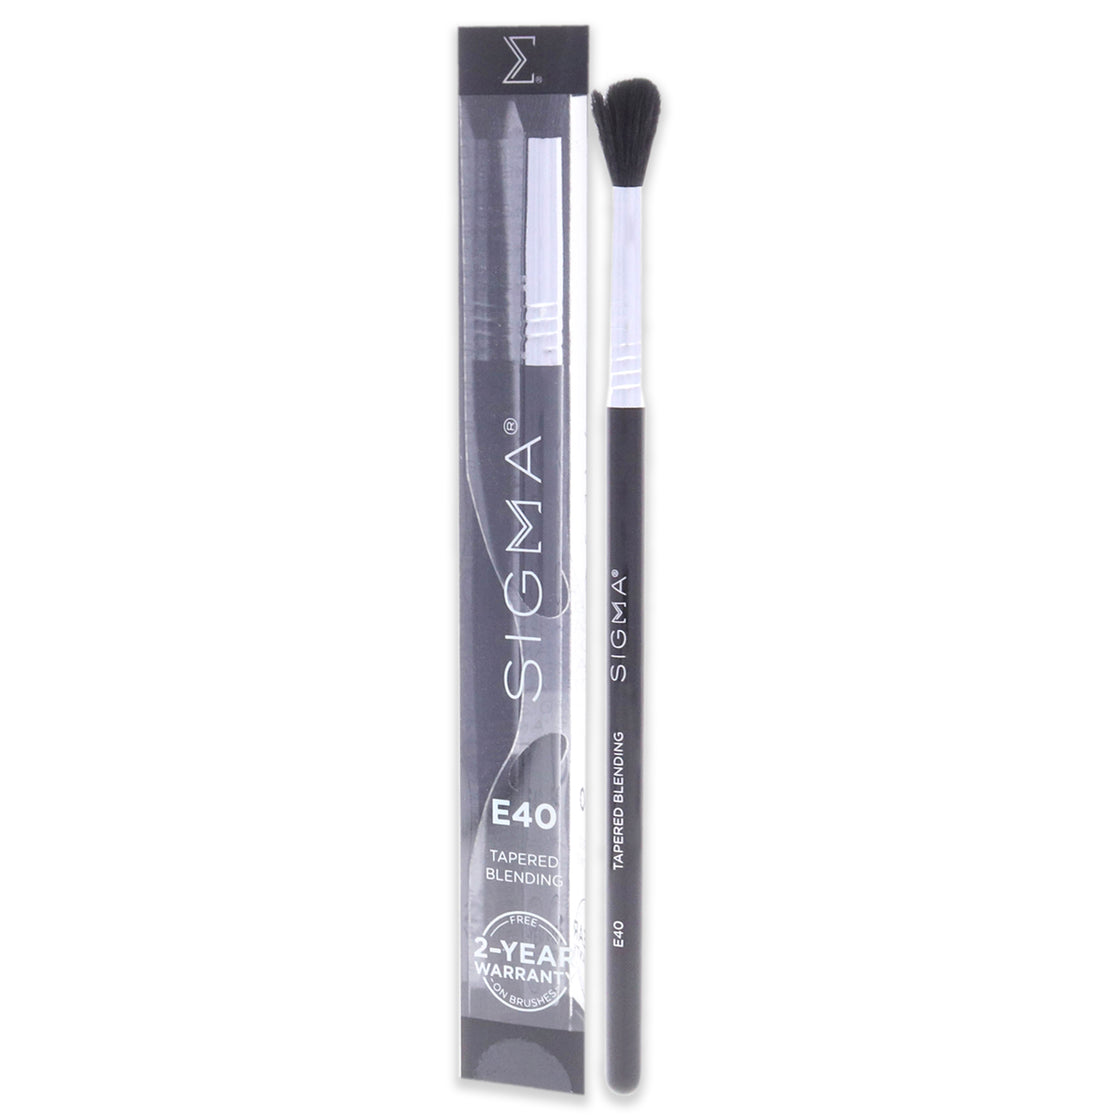 Tapered Blending Brush - E40 Black-Chrome by SIGMA for Women - 1 Pc Brush